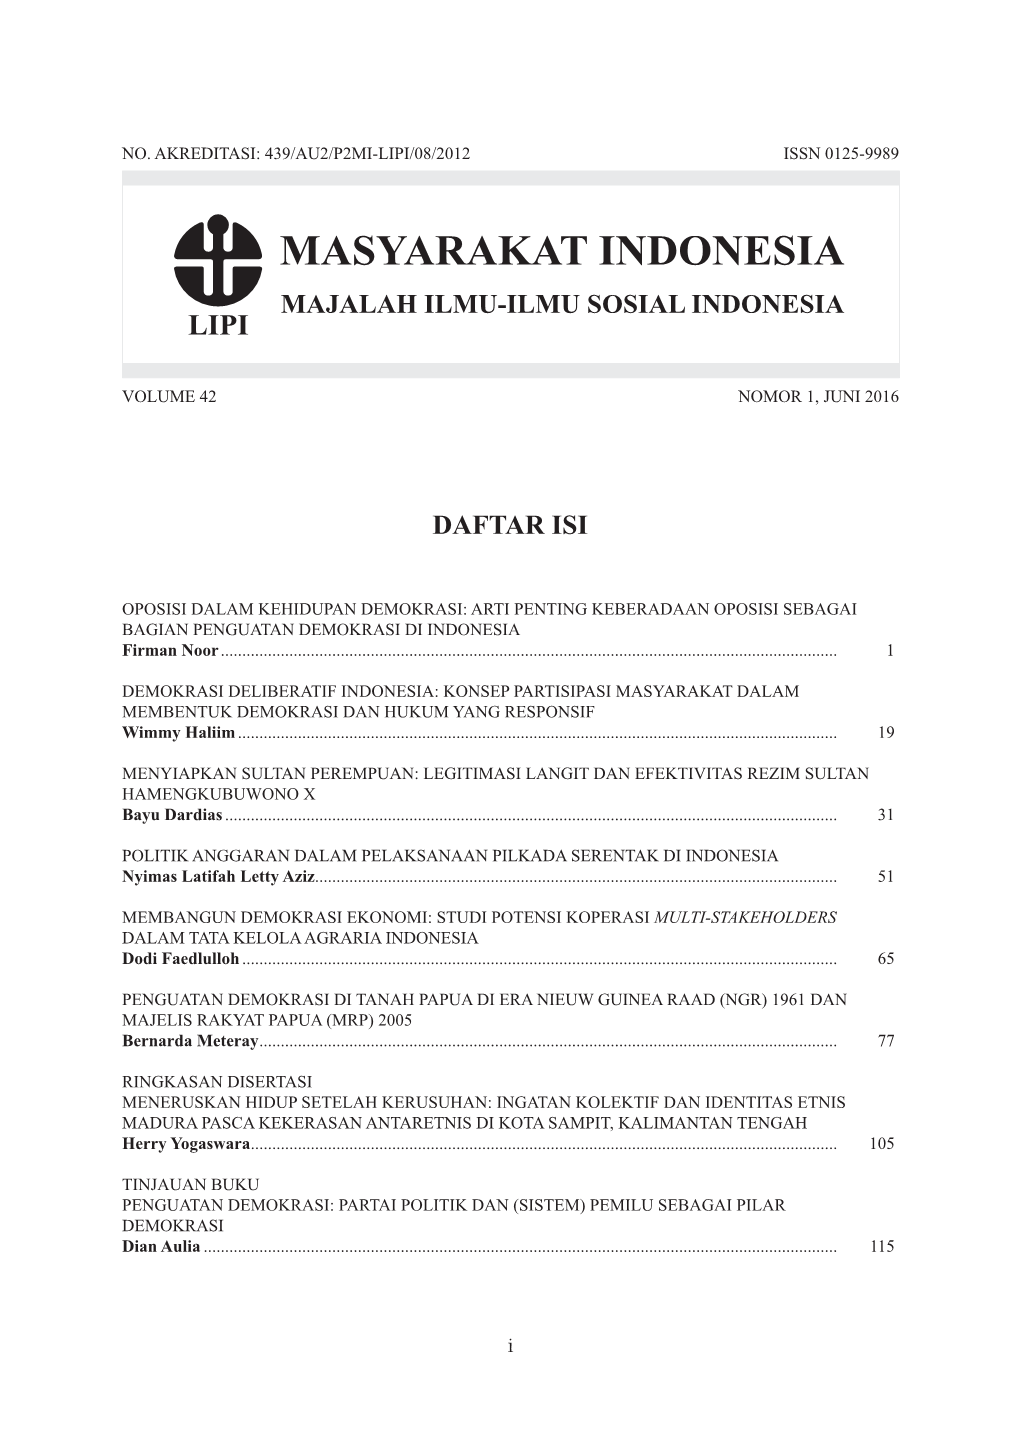 DEMOKRASI DELIBERATIF INDONESIA: KONSEP PARTISIPASI MASYARAKAT DALAM MEMBENTUK DEMOKRASI DAN HUKUM YANG RESPONSIF Wimmy Haliim